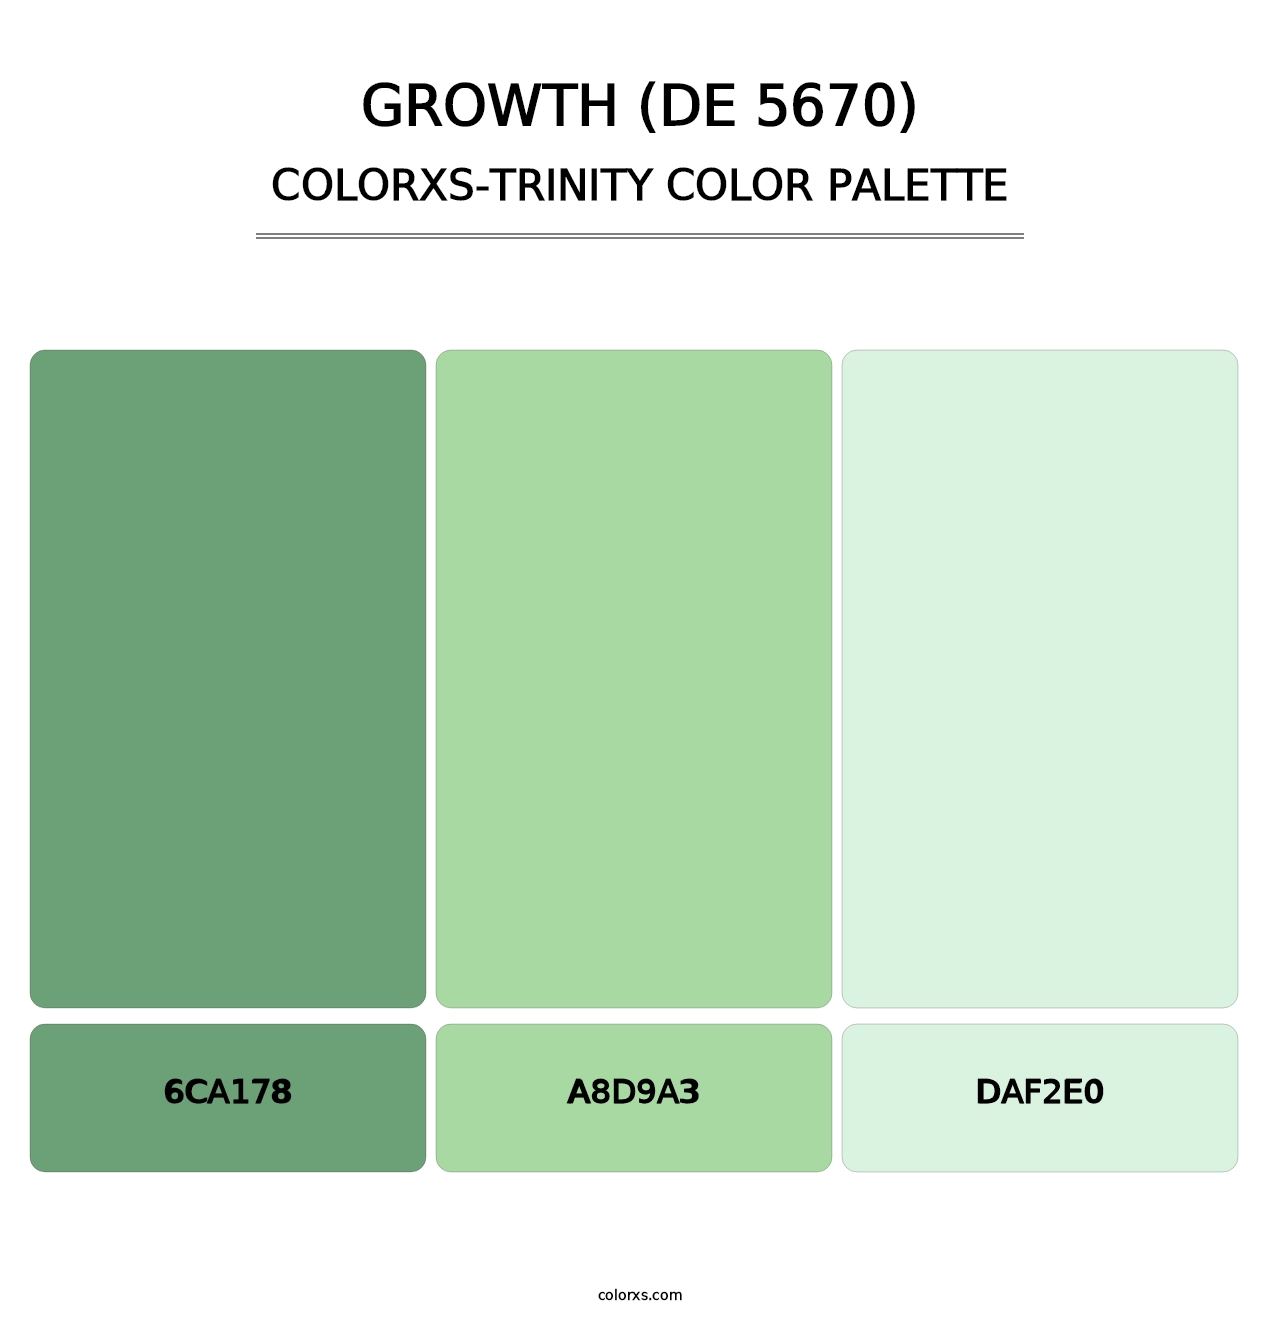 Growth (DE 5670) - Colorxs Trinity Palette